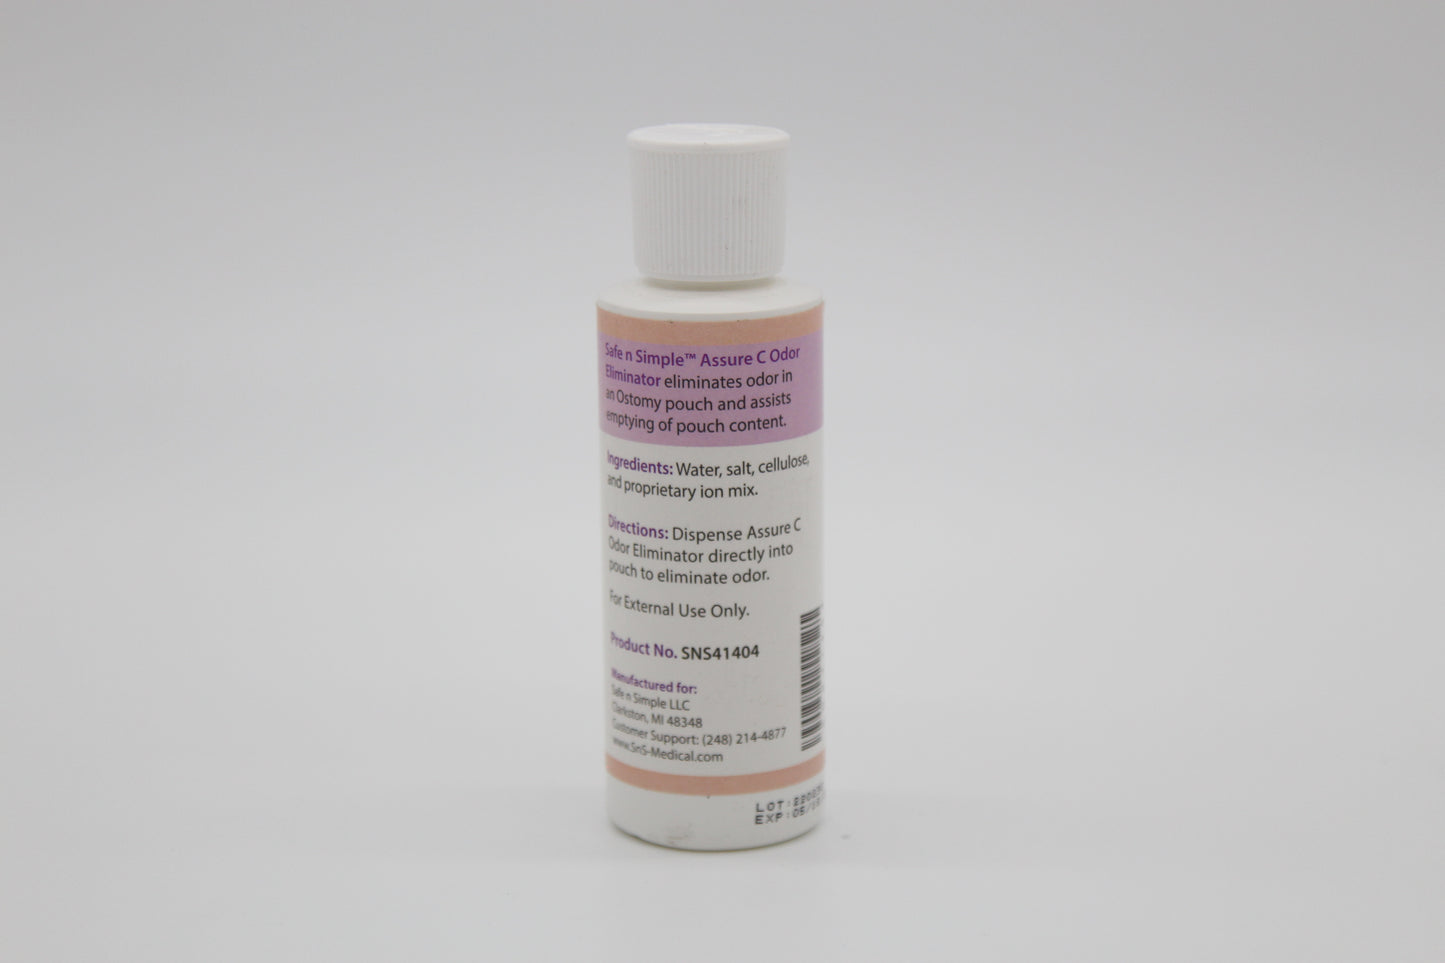 Assure C Odor Eliminator Clear | Medical products | New medical products | Safe n Simple | SNS medical